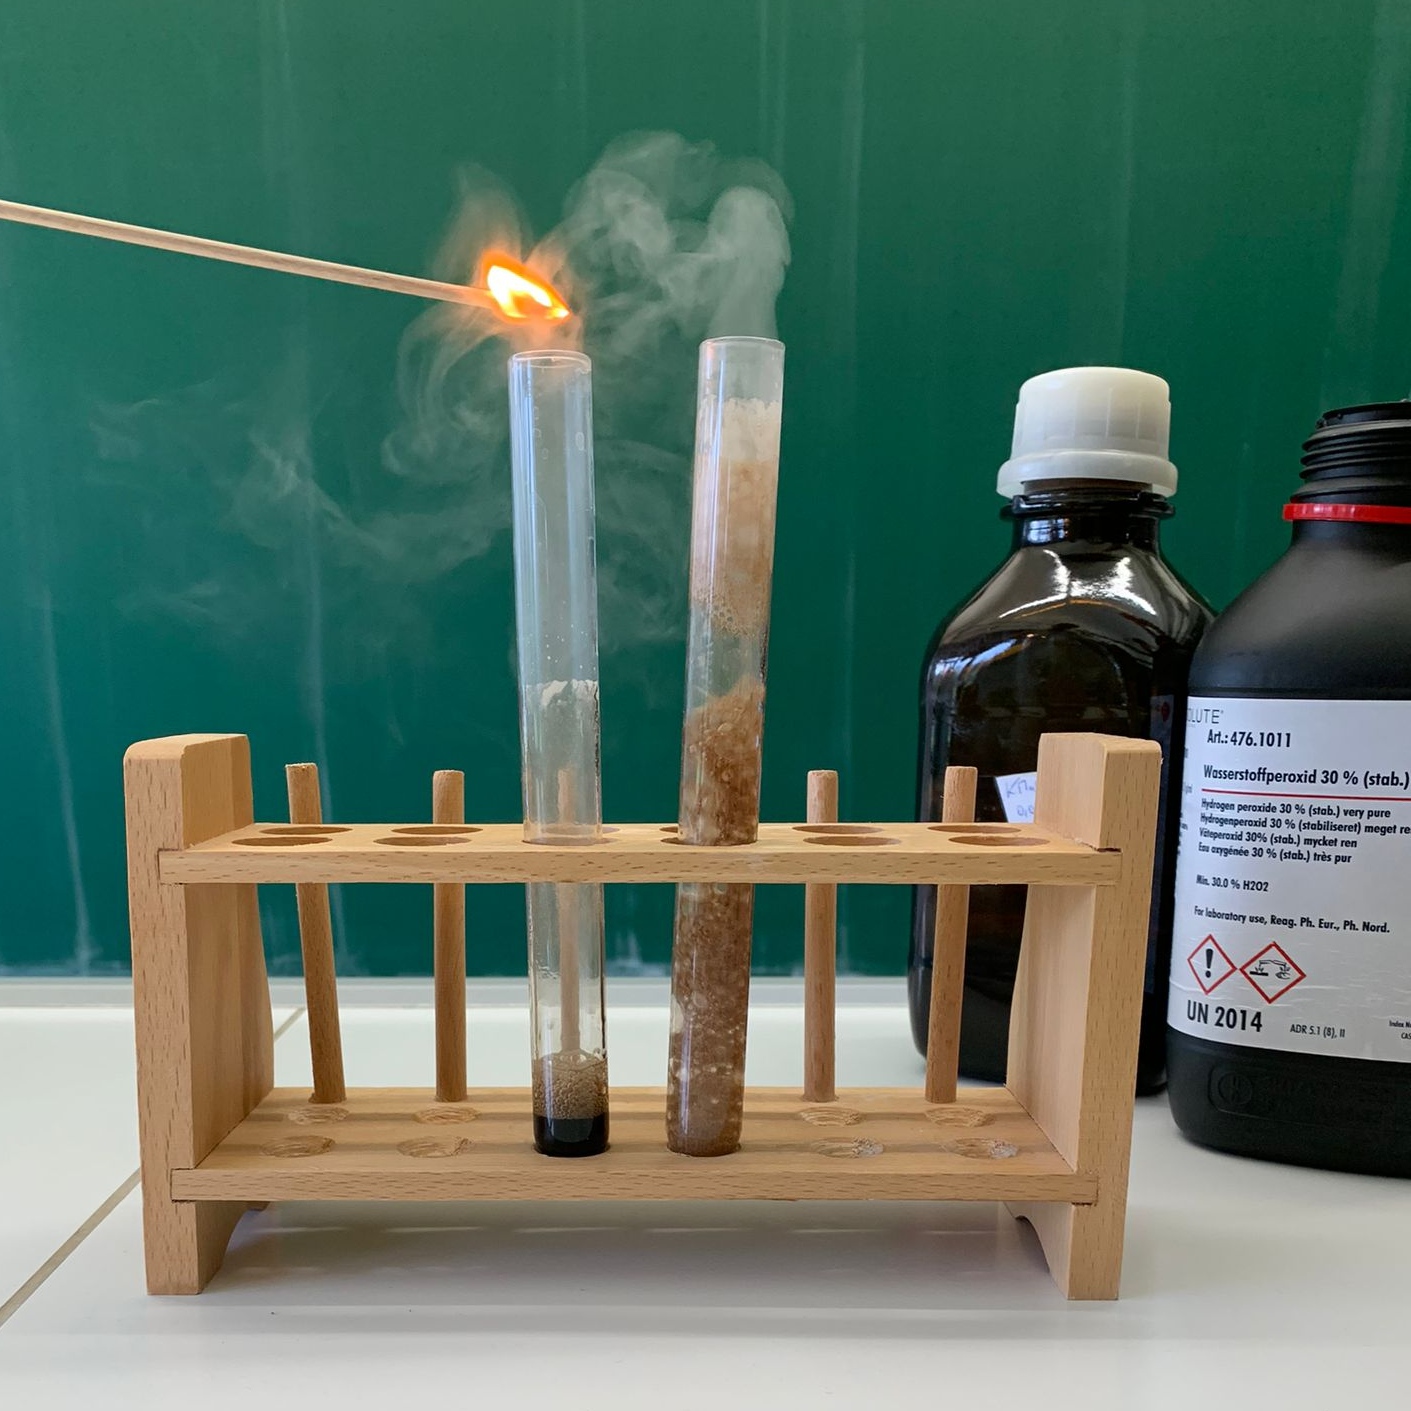 Bild aus dem Chemischen Fotokalender: Zwei Reagenzgläser und ein brennender Glimmspan